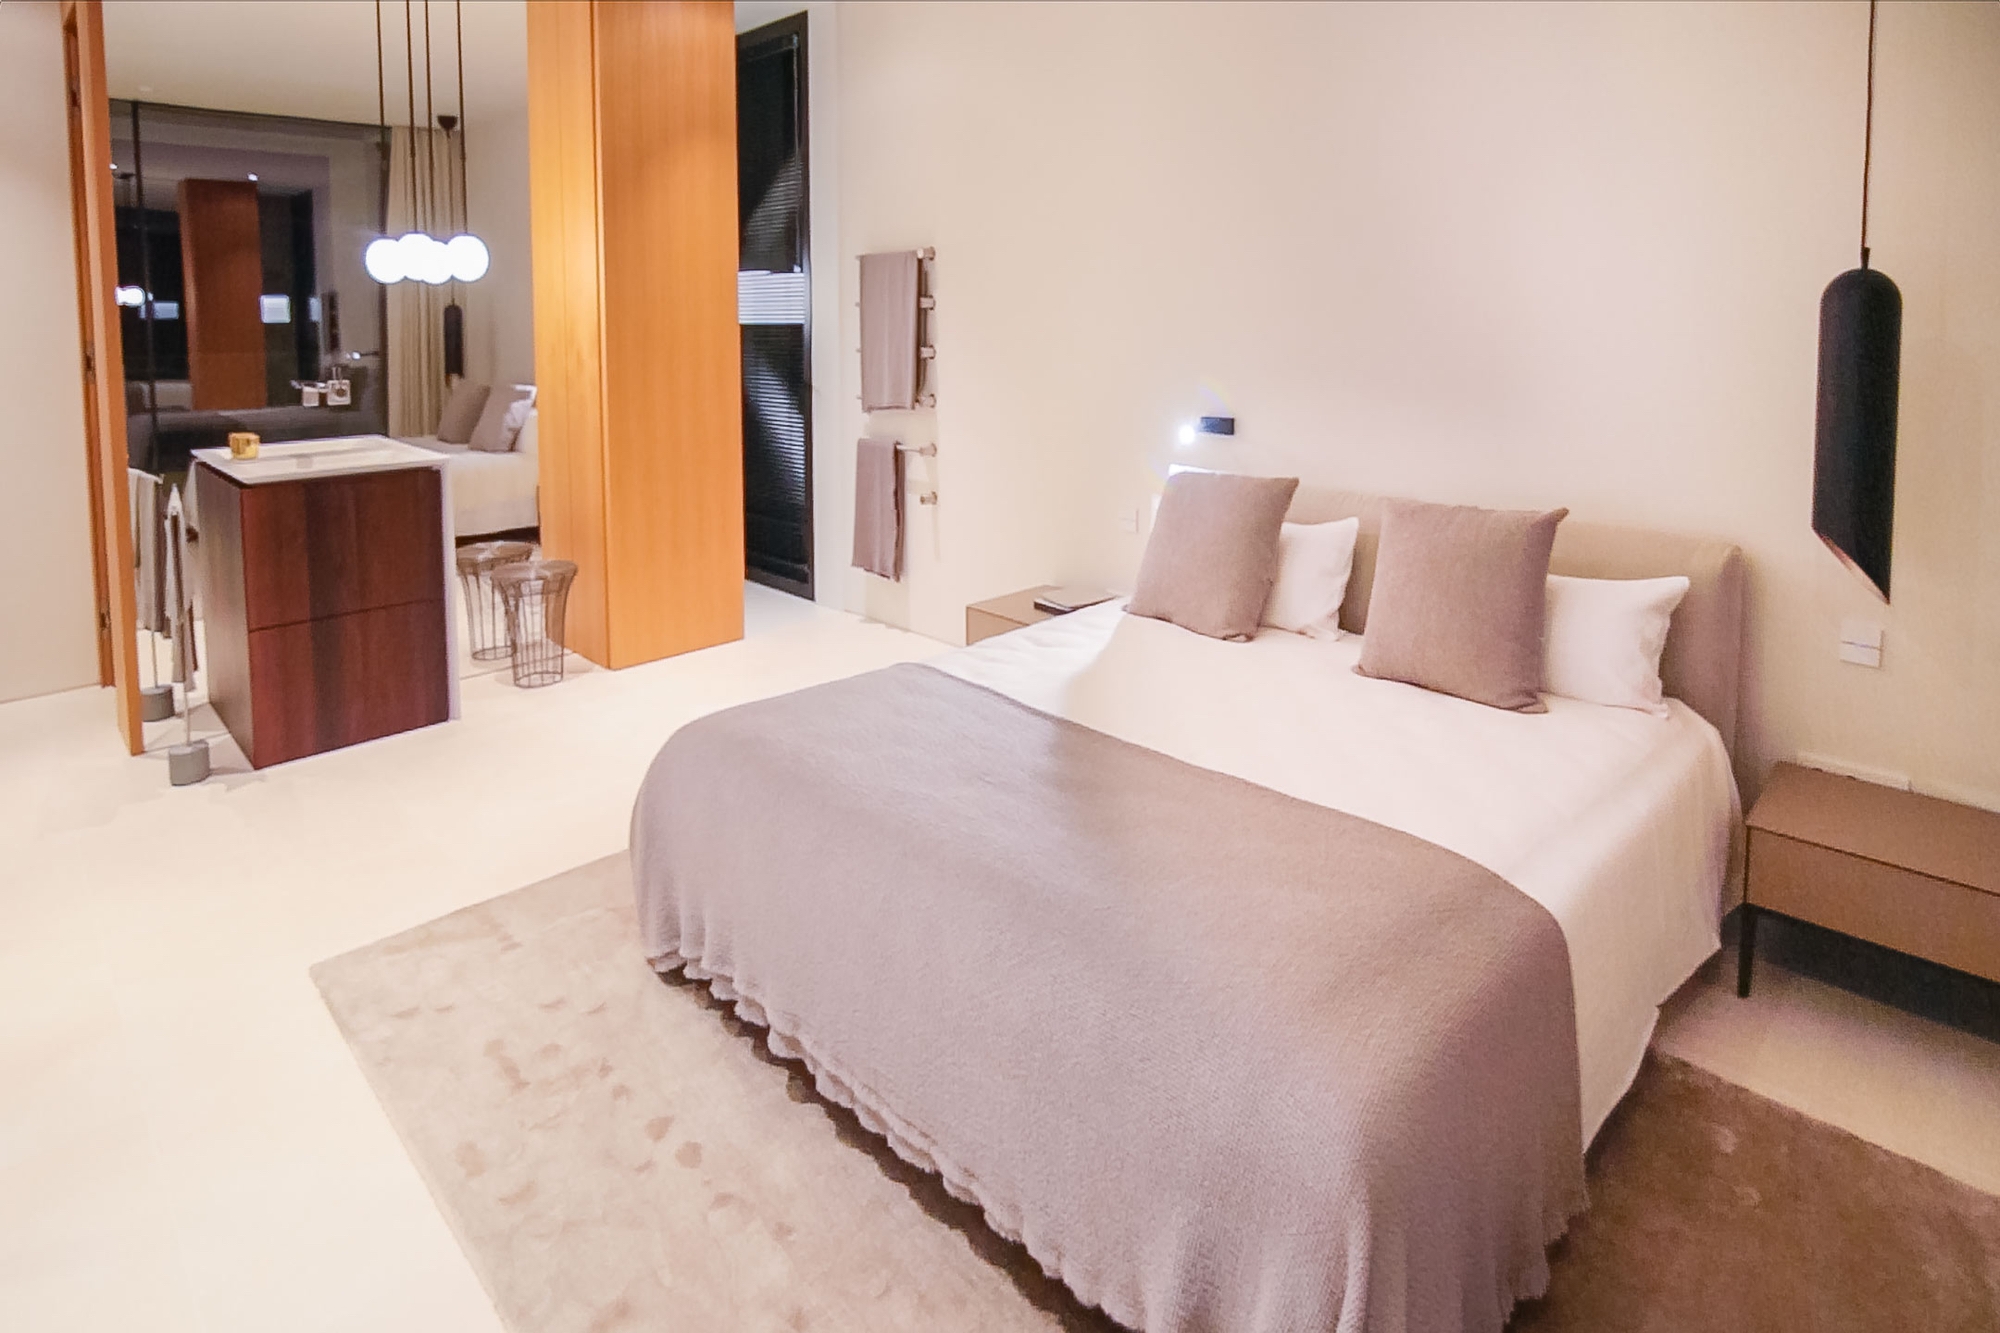 Luxury villa on Montport - Master bedroom with bathroom en suite